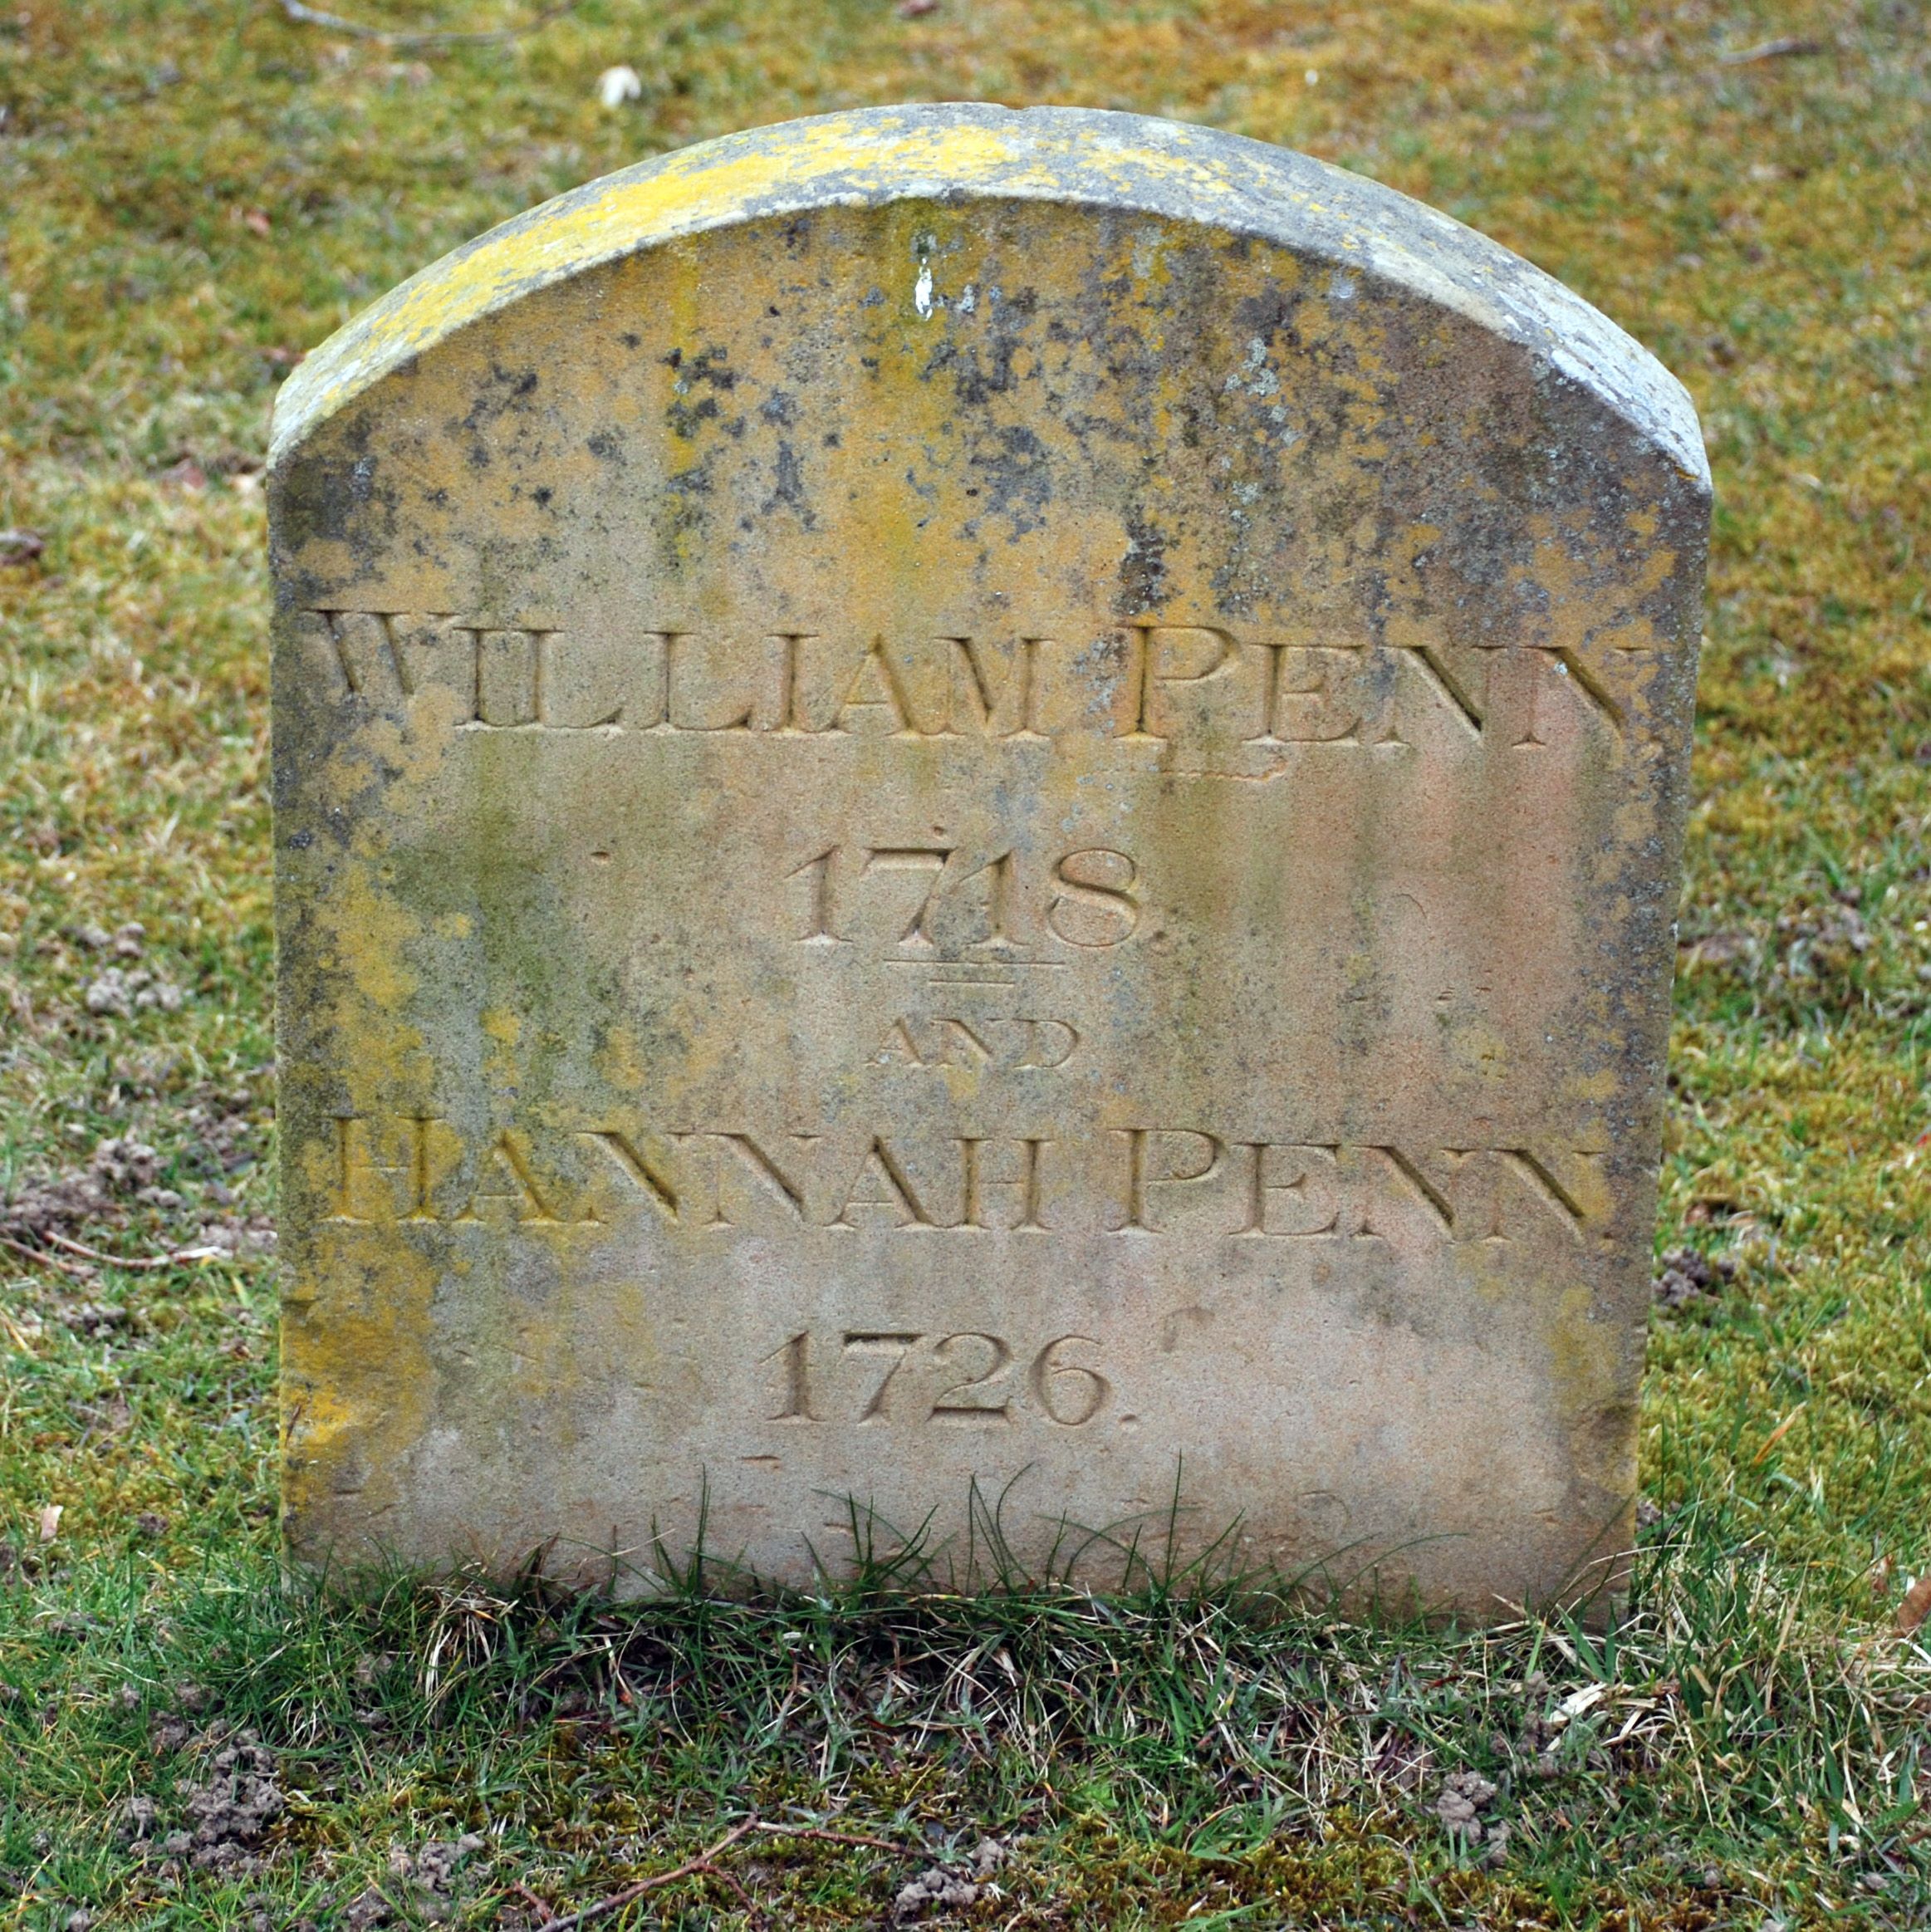 William Penn's Grave